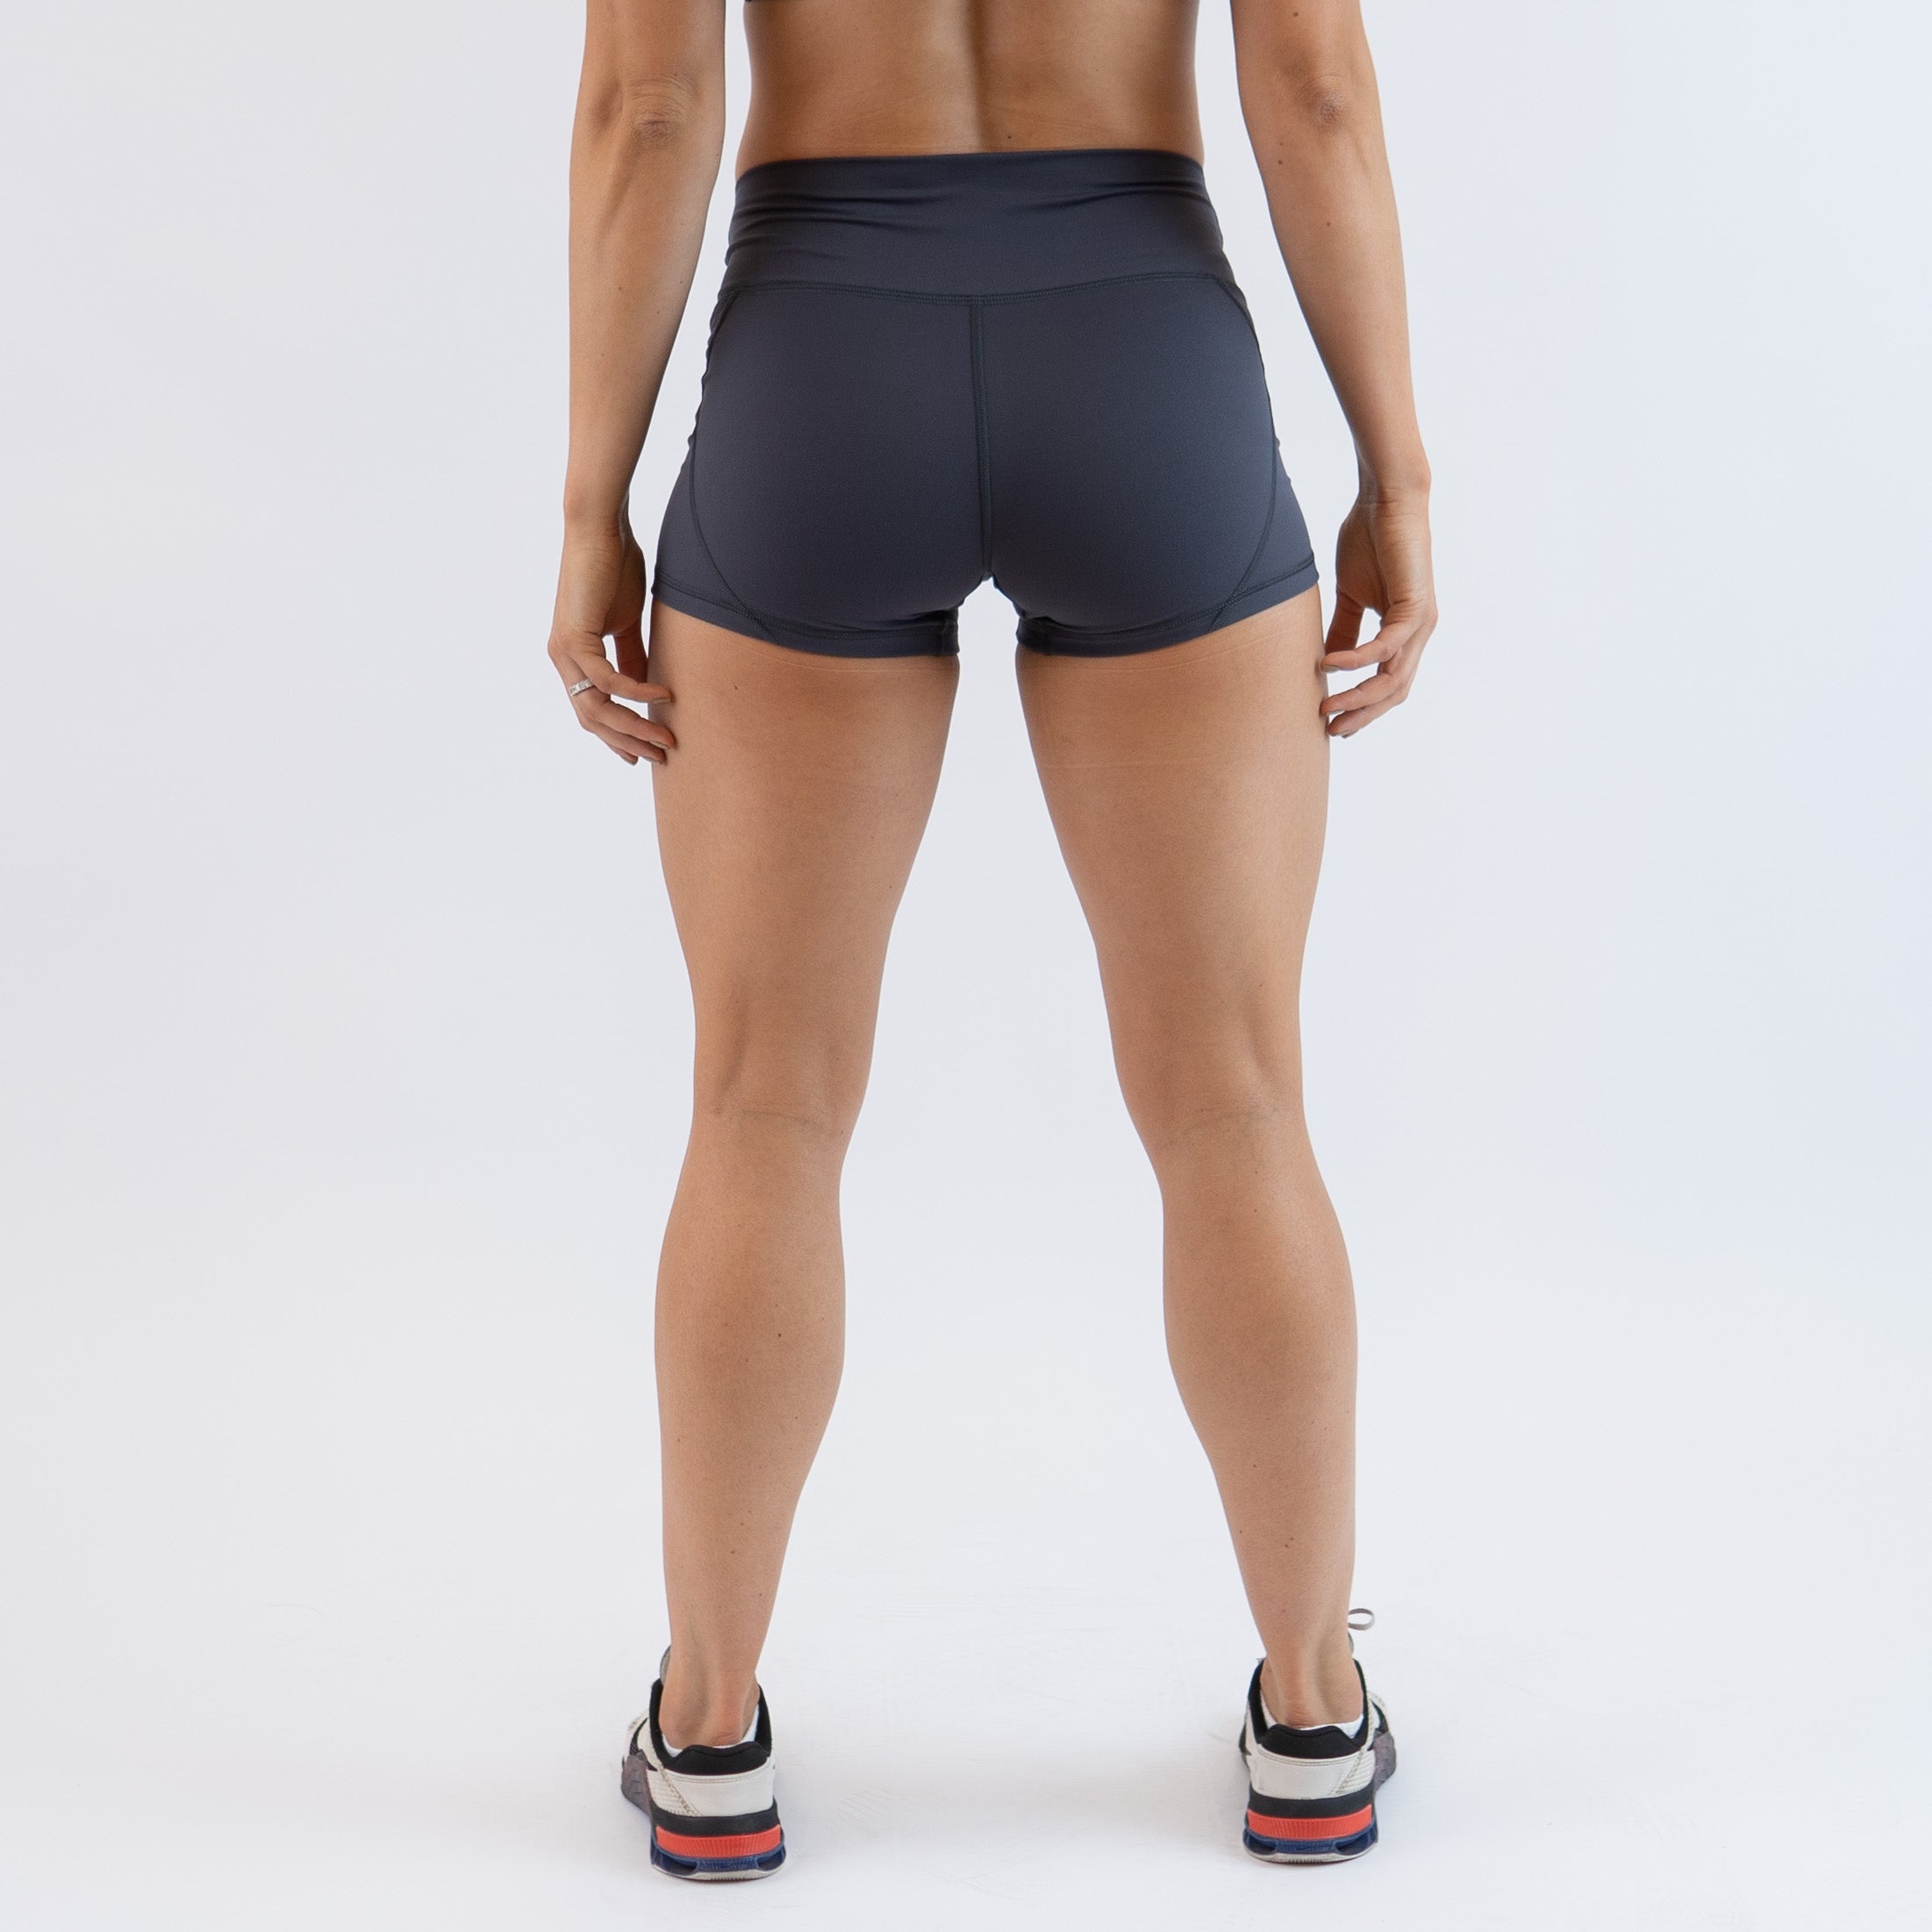 Ebony Mid Rise Contour Training Shorts For Women